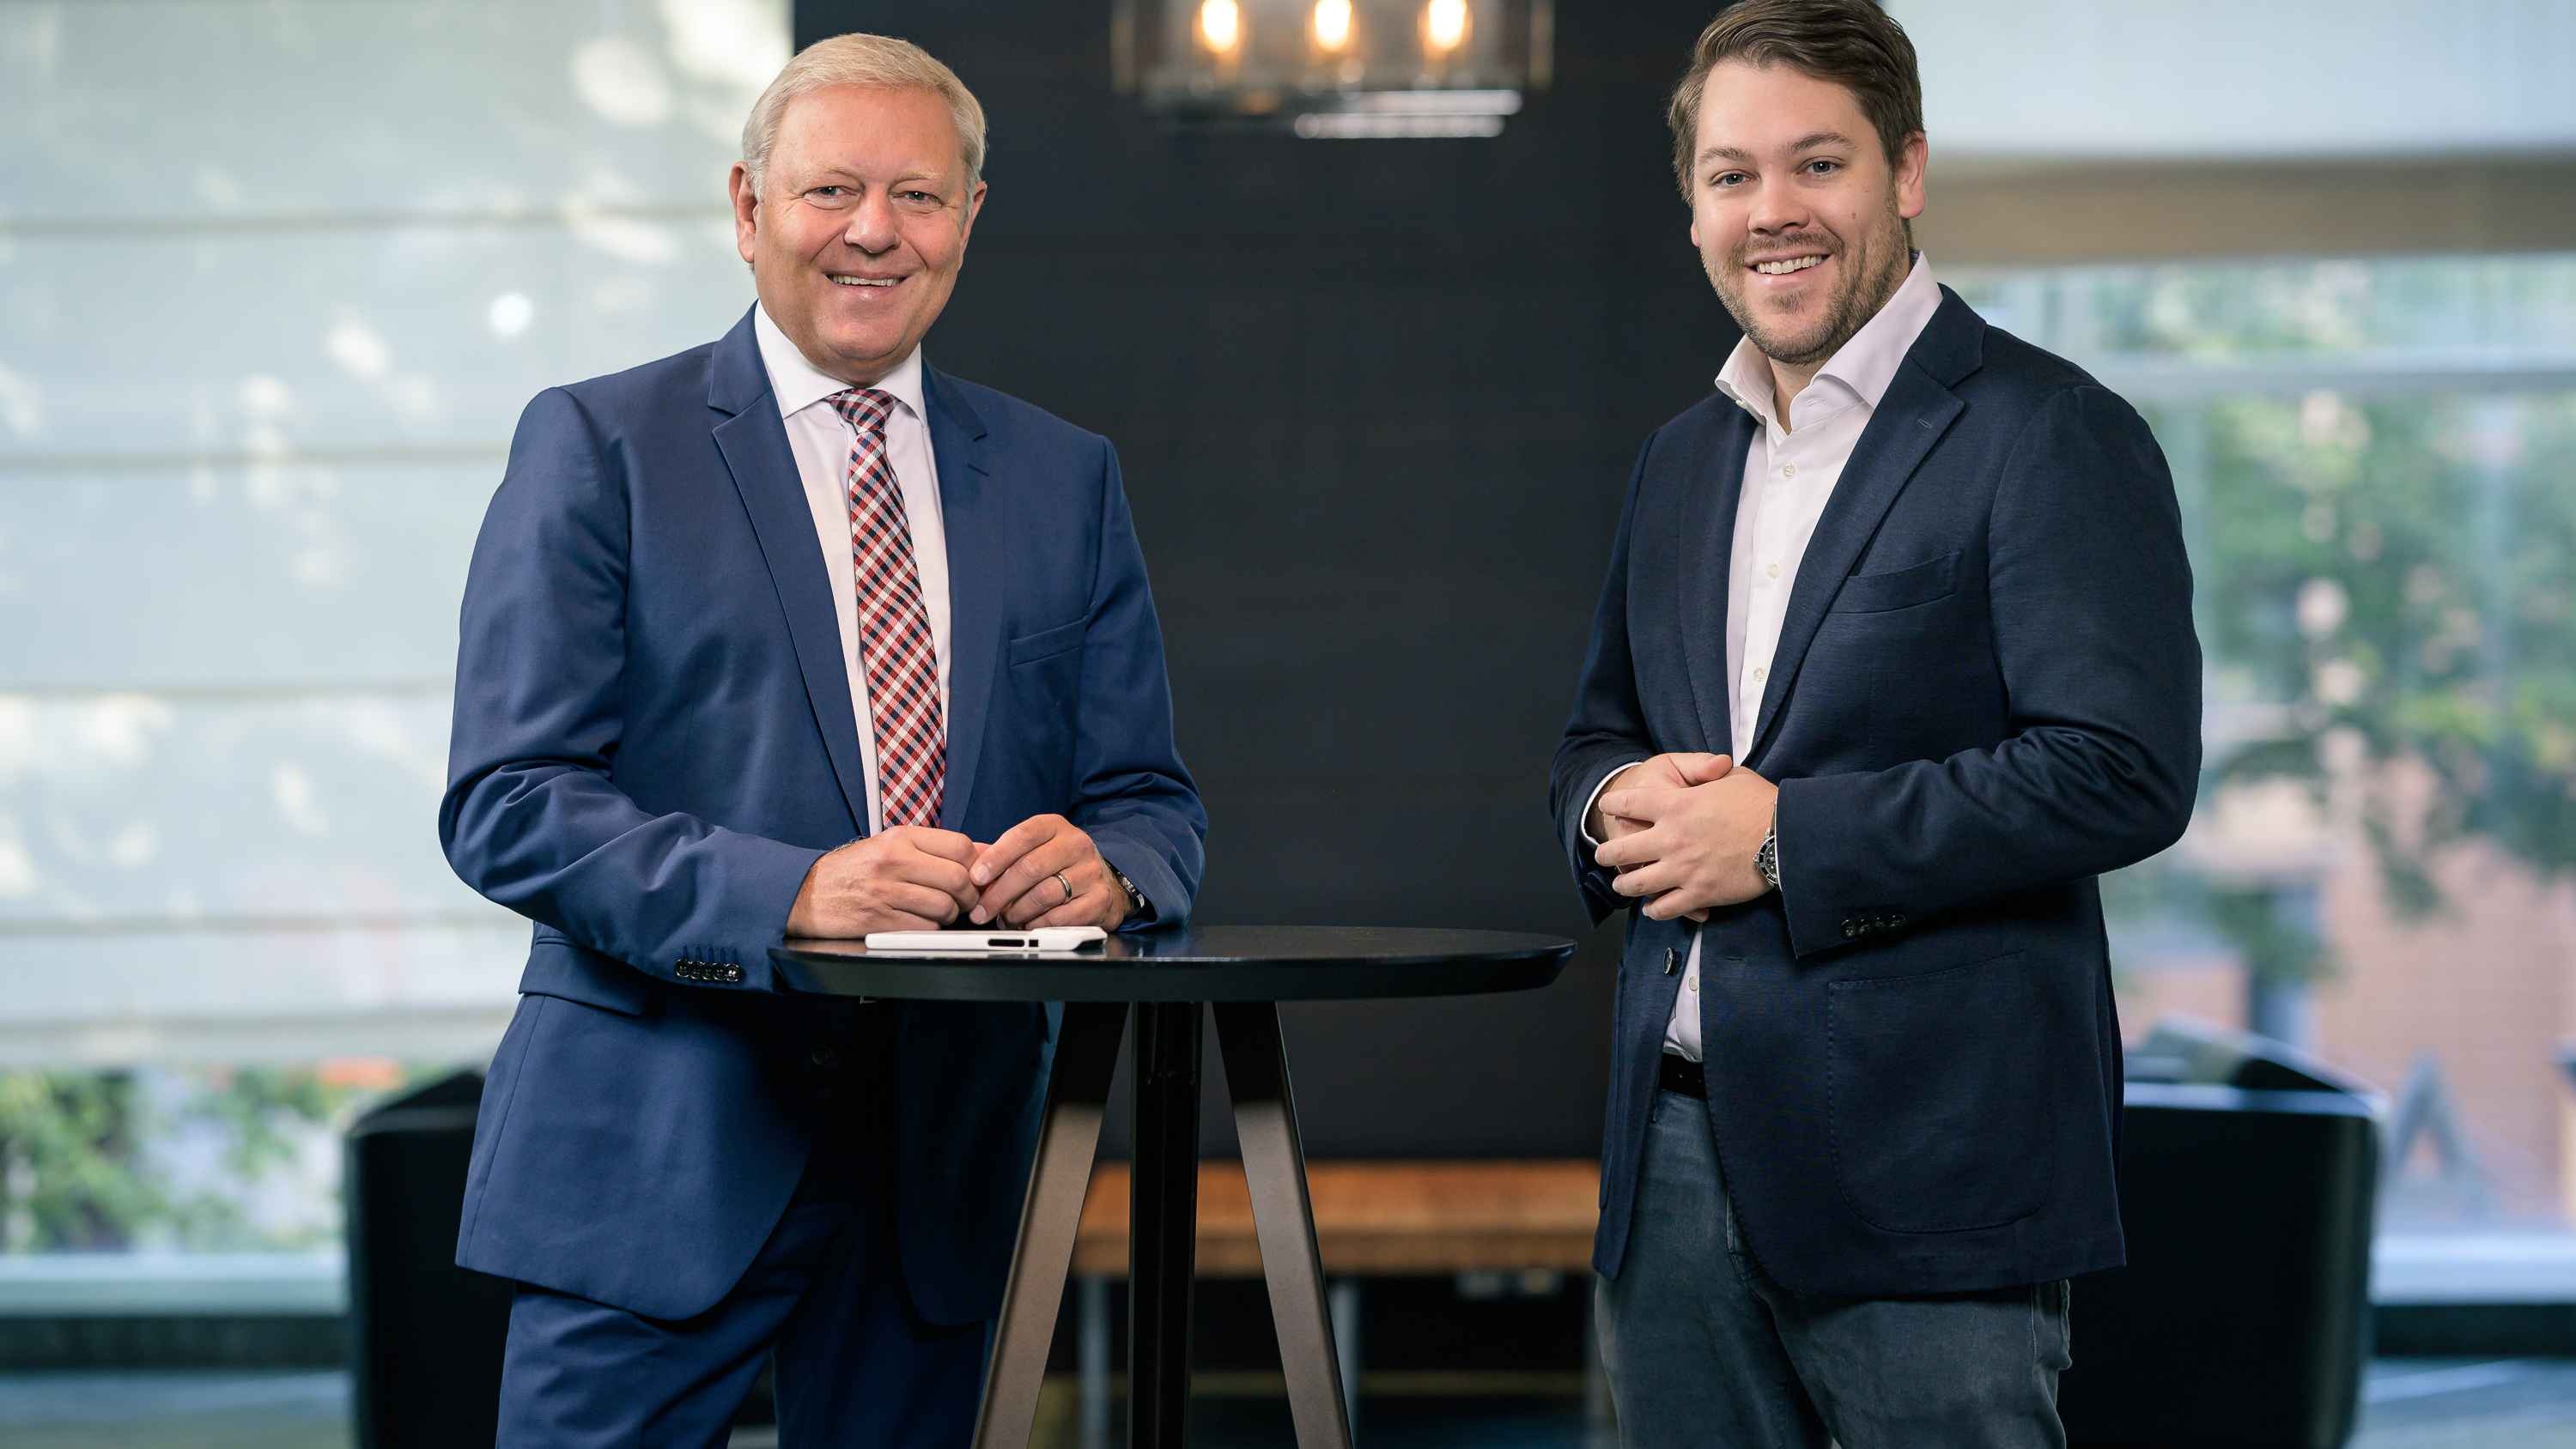 Influencer-Anbieter Eqolot mit neuem Investor Volksbank Brawo 